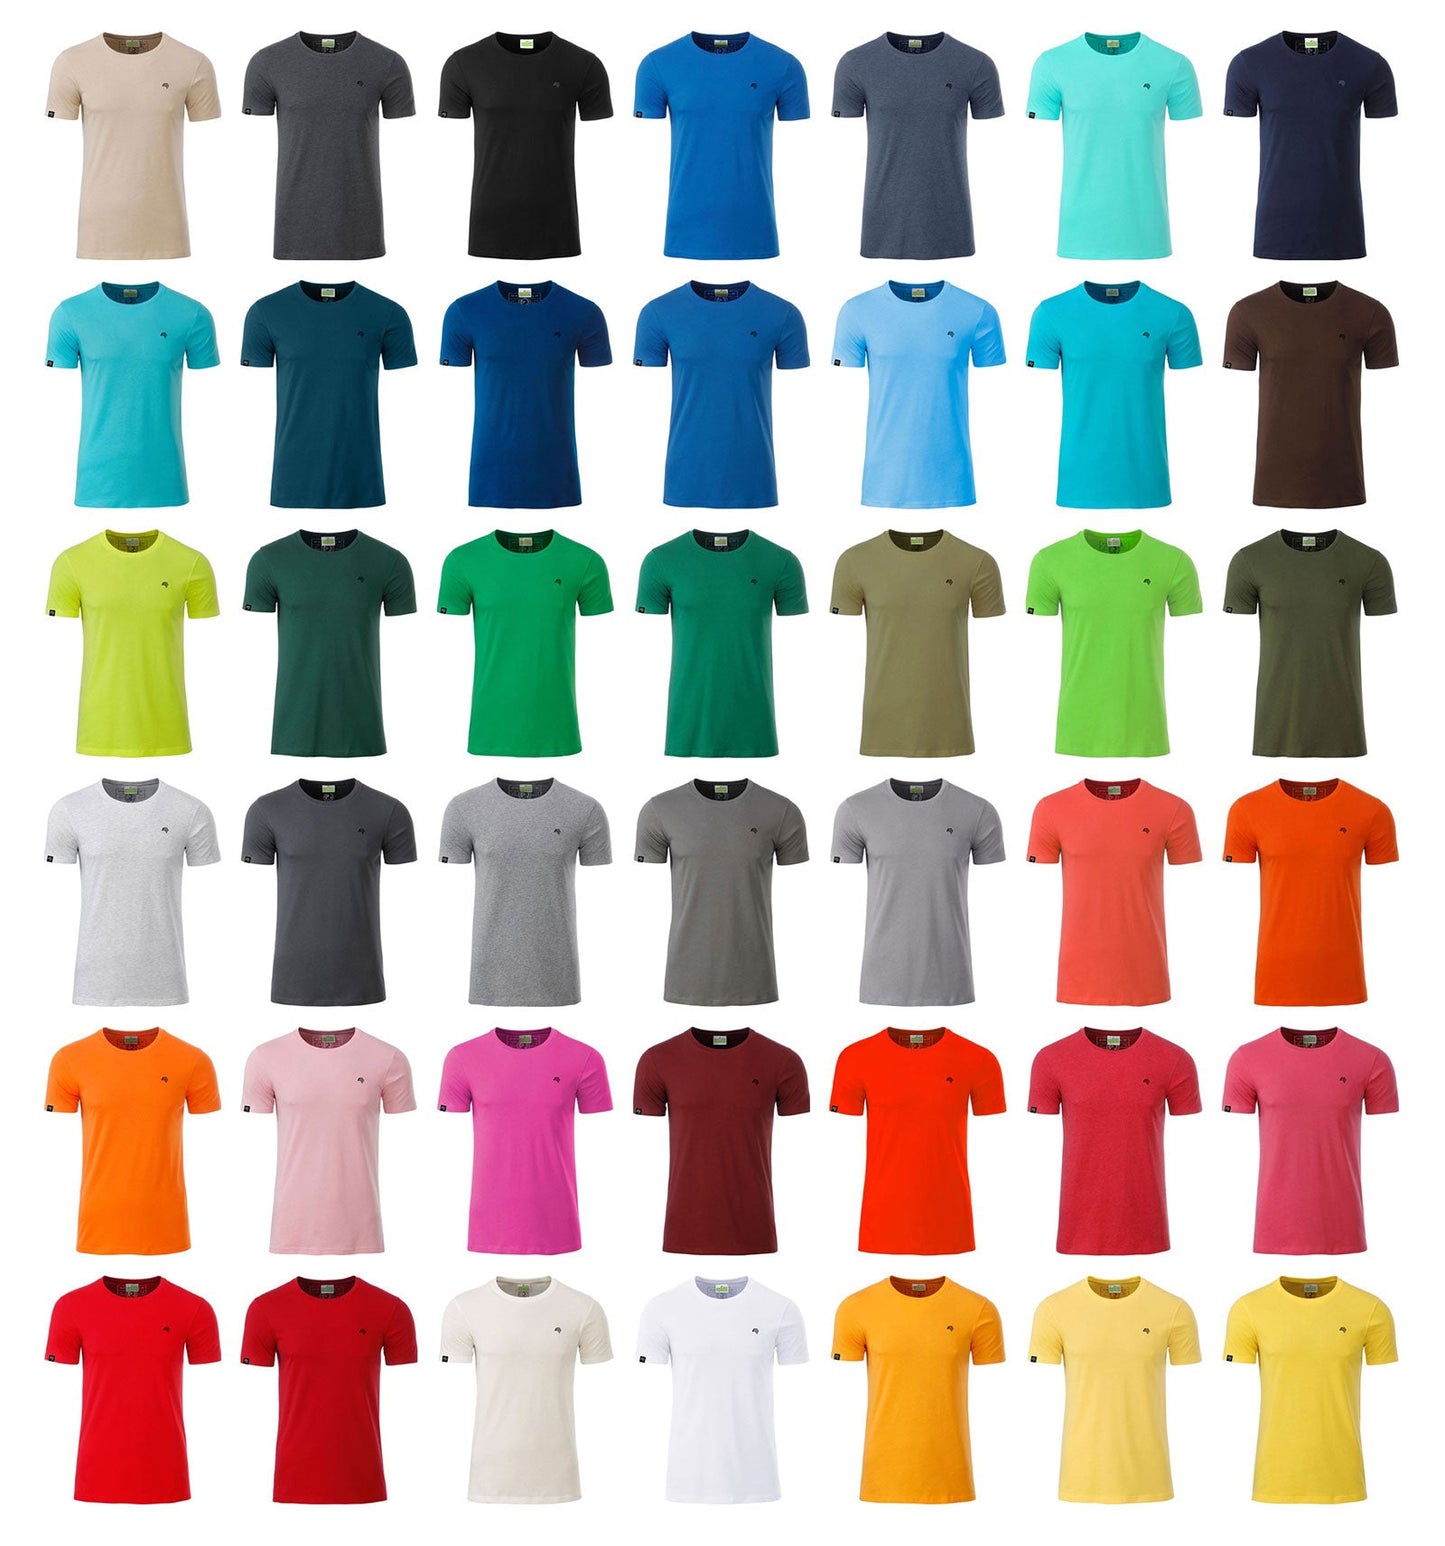 ― % ― JAN 8008/10A ― Herren Bio-Baumwolle T-Shirt - Dark Orange [M]